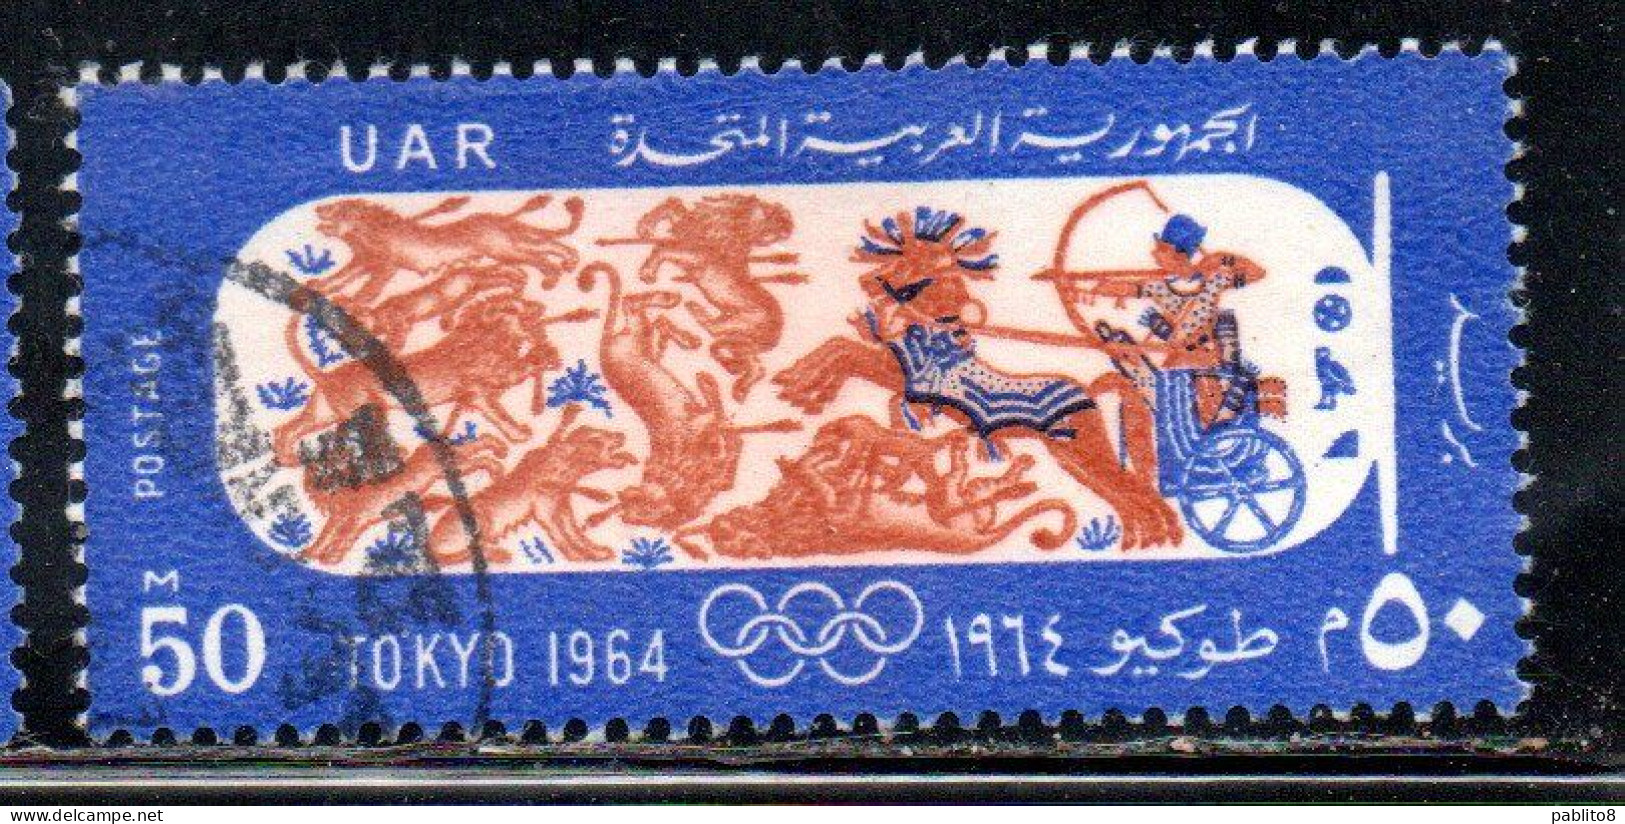 UAR EGYPT EGITTO 1964 OLYMIC GAMES TOKYO PHARAOH IN CHARIOT HUNTING 50m USED USATO OBLITERE' - Gebruikt